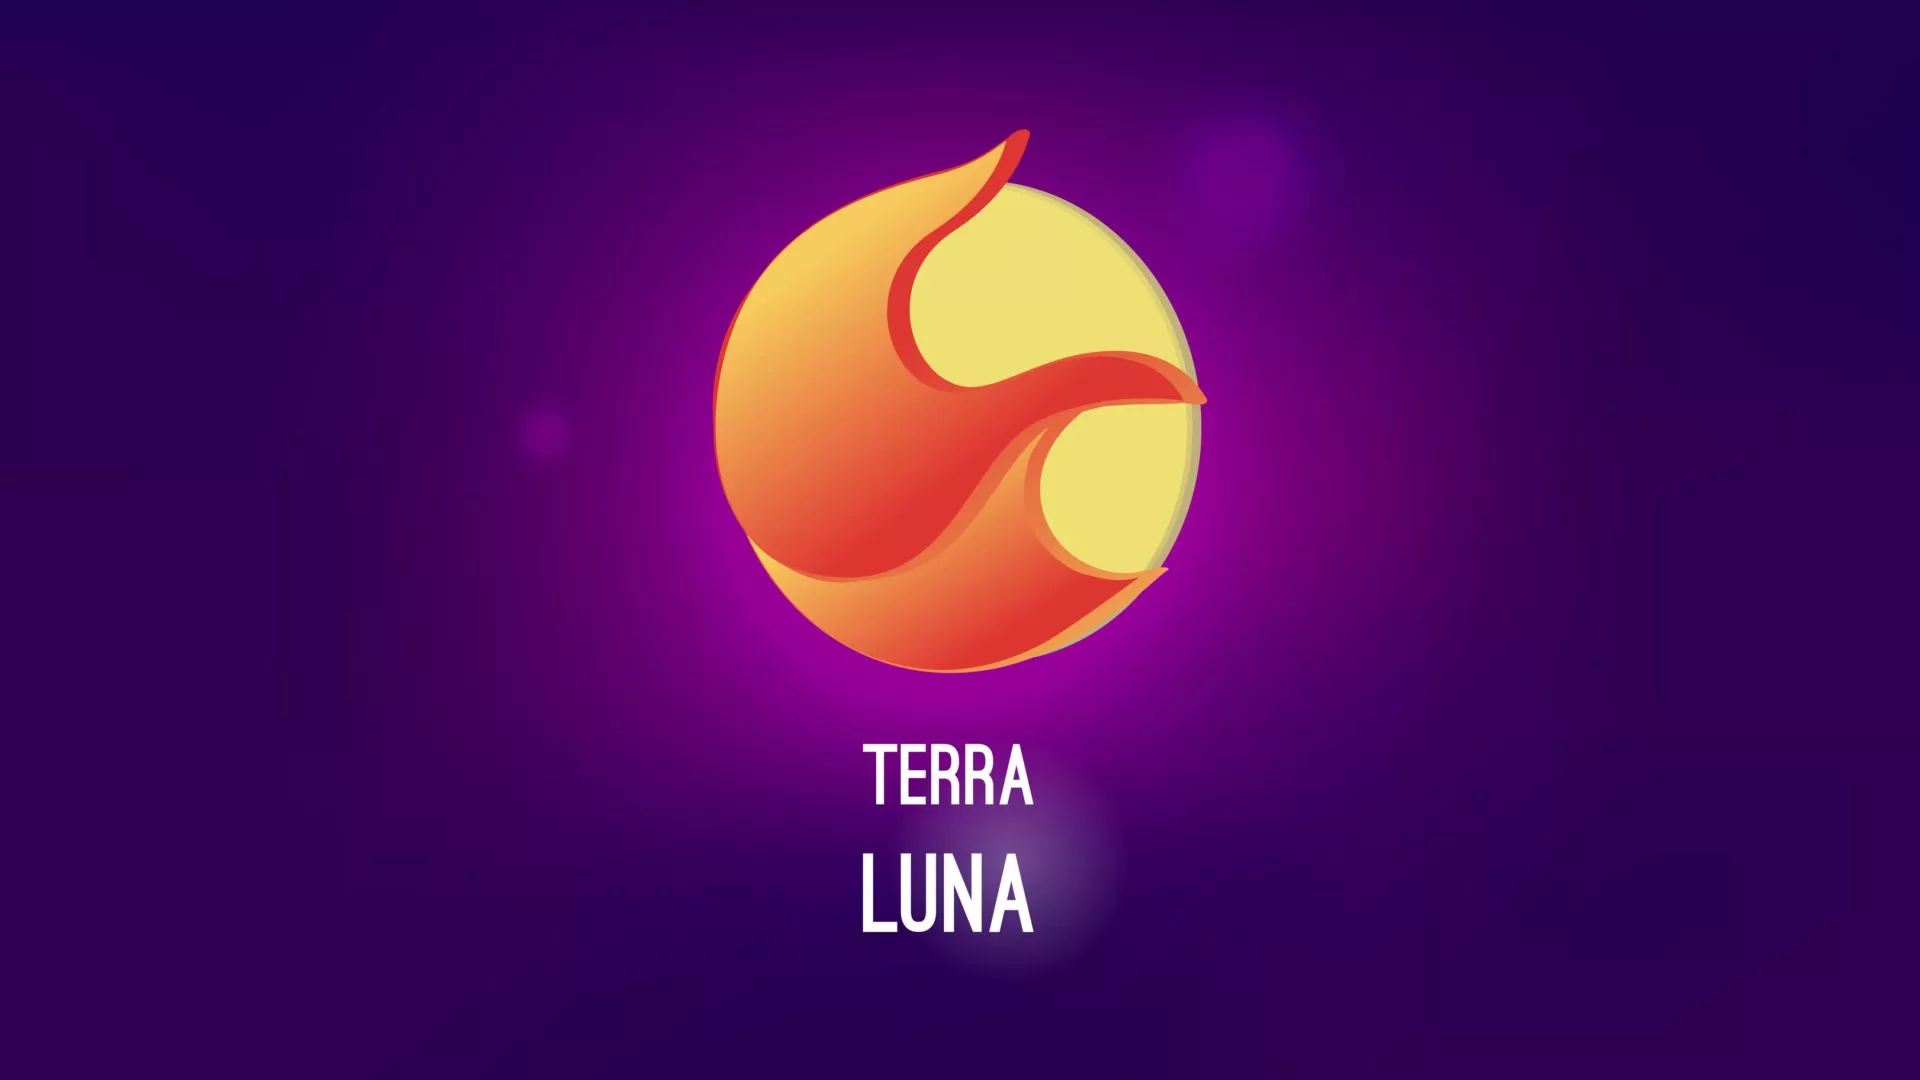 Terra-oprichter Do Kwon lijkt LUNA te gebruiken voor eigen gewin